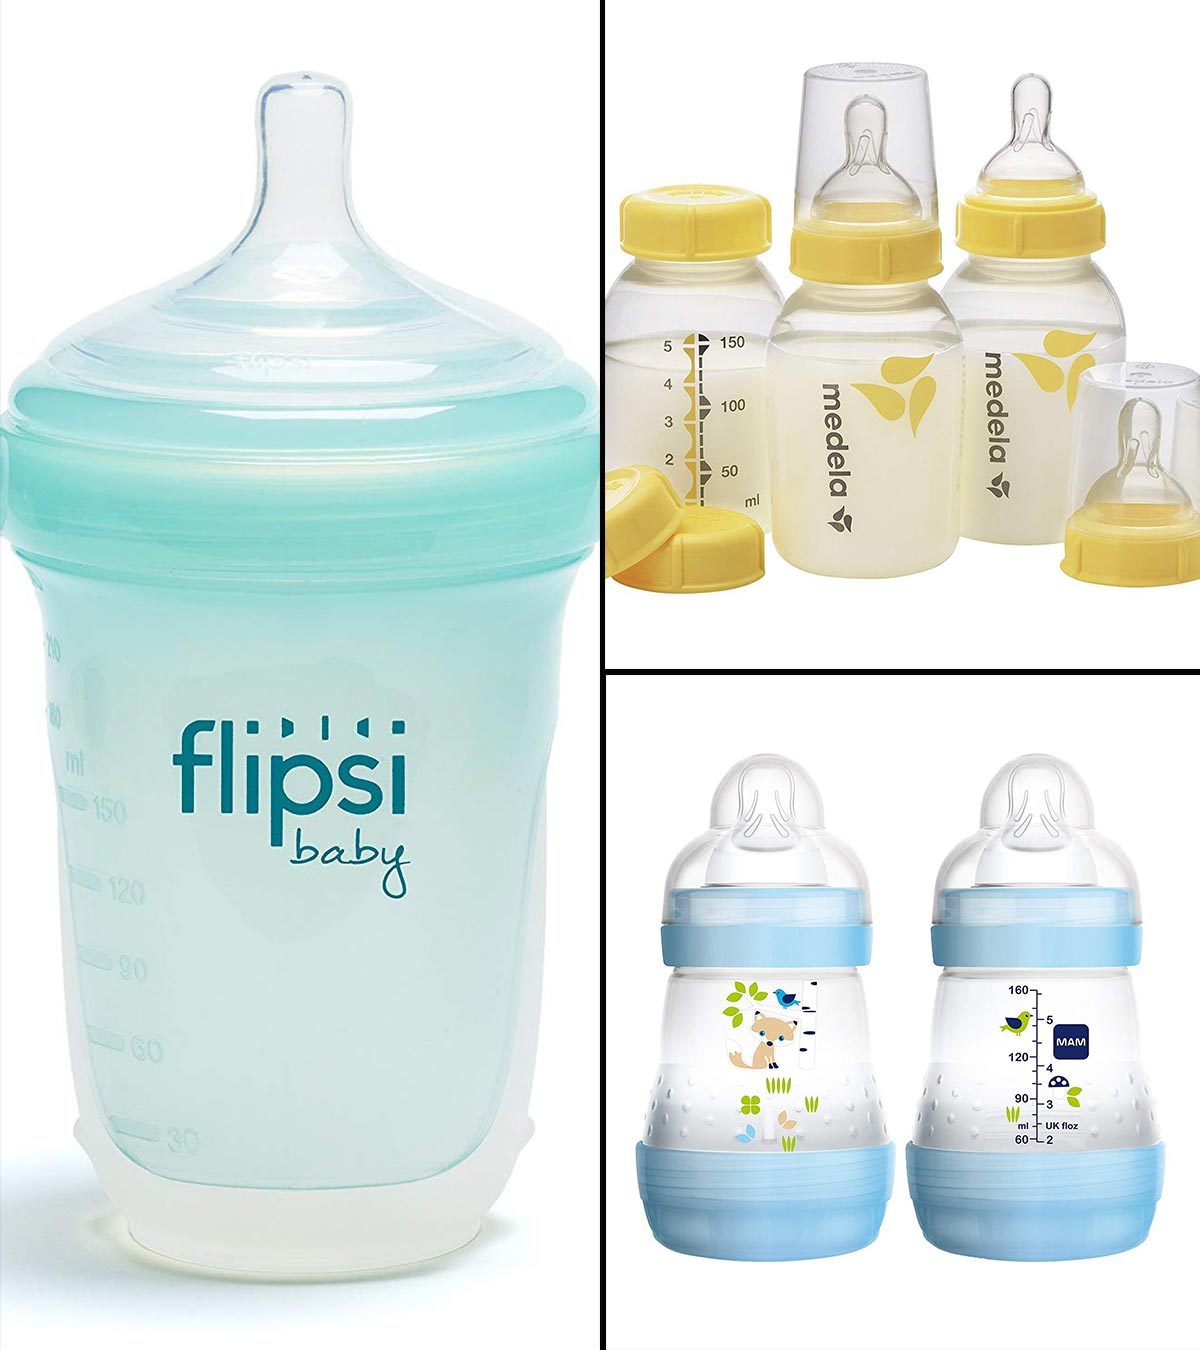 https://www.momjunction.com/wp-content/uploads/2019/01/21-Best-Baby-Bottles-Of-2019-1-1.jpg